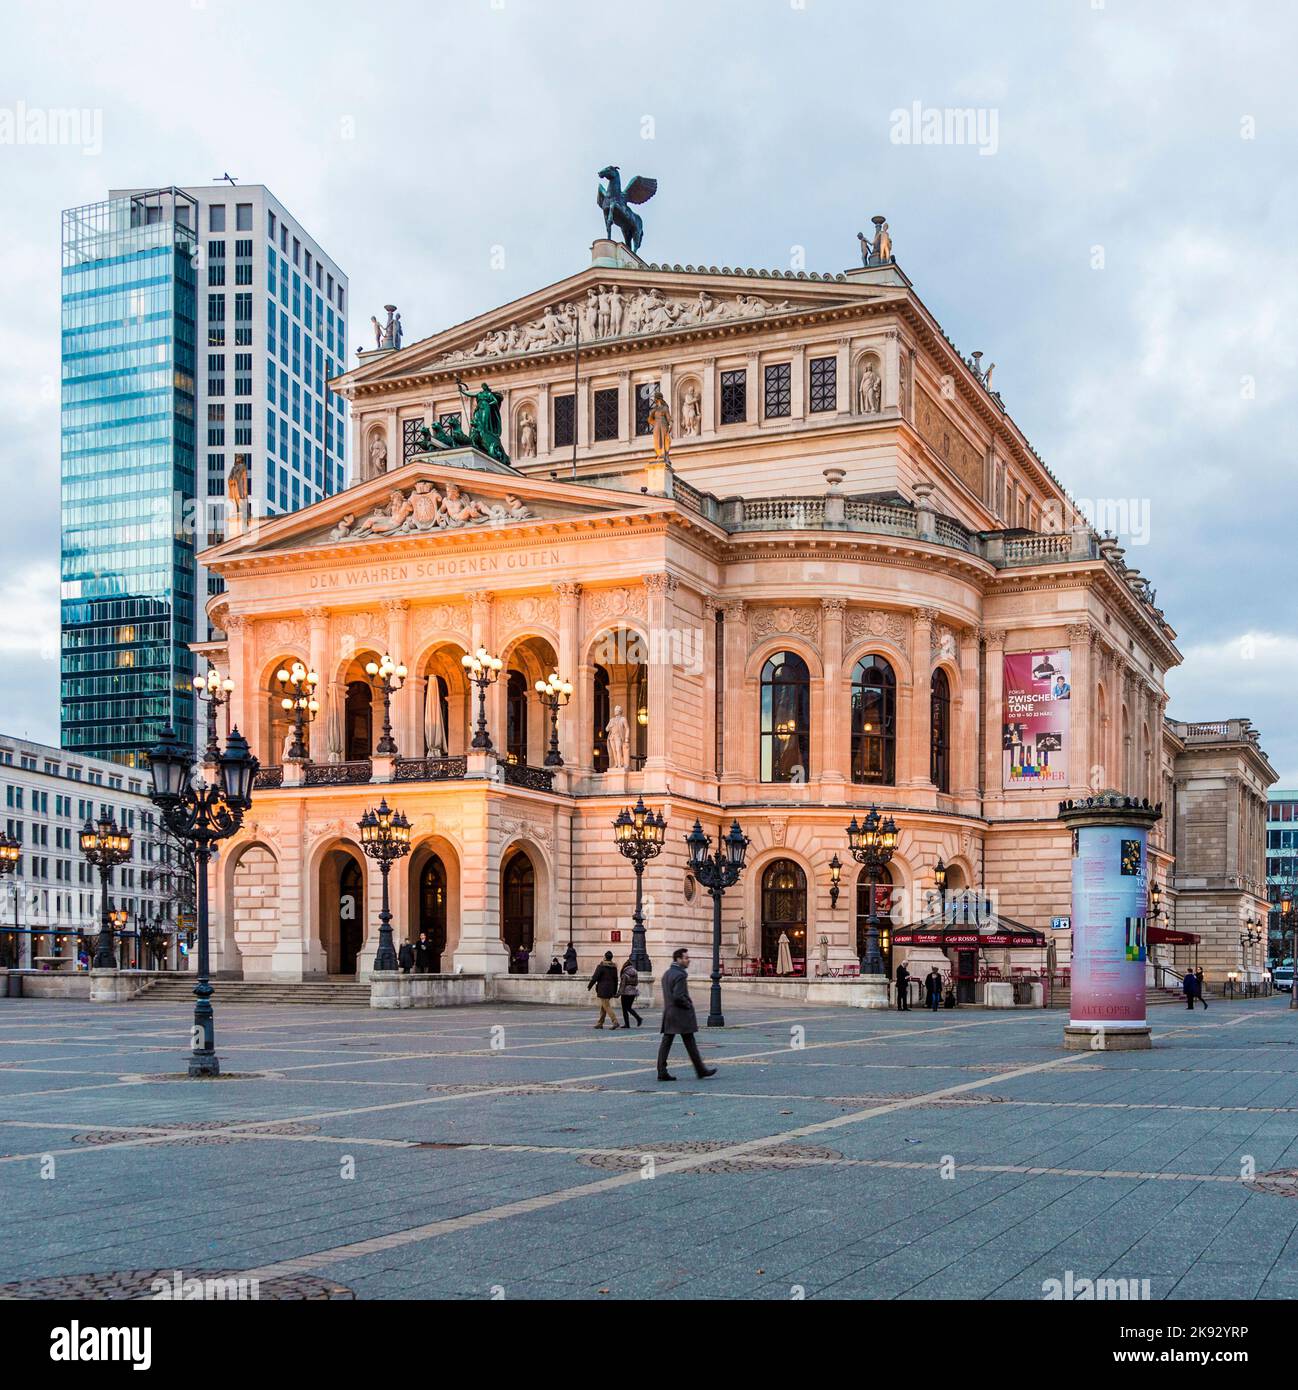 FRANKFURT, ALEMANIA - 22 DE FEBRERO de 2015: La antigua ópera de Frankfurt, Alemania. Alte Oper es una sala de conciertos construida en 1970s en el sitio de y parecido Foto de stock